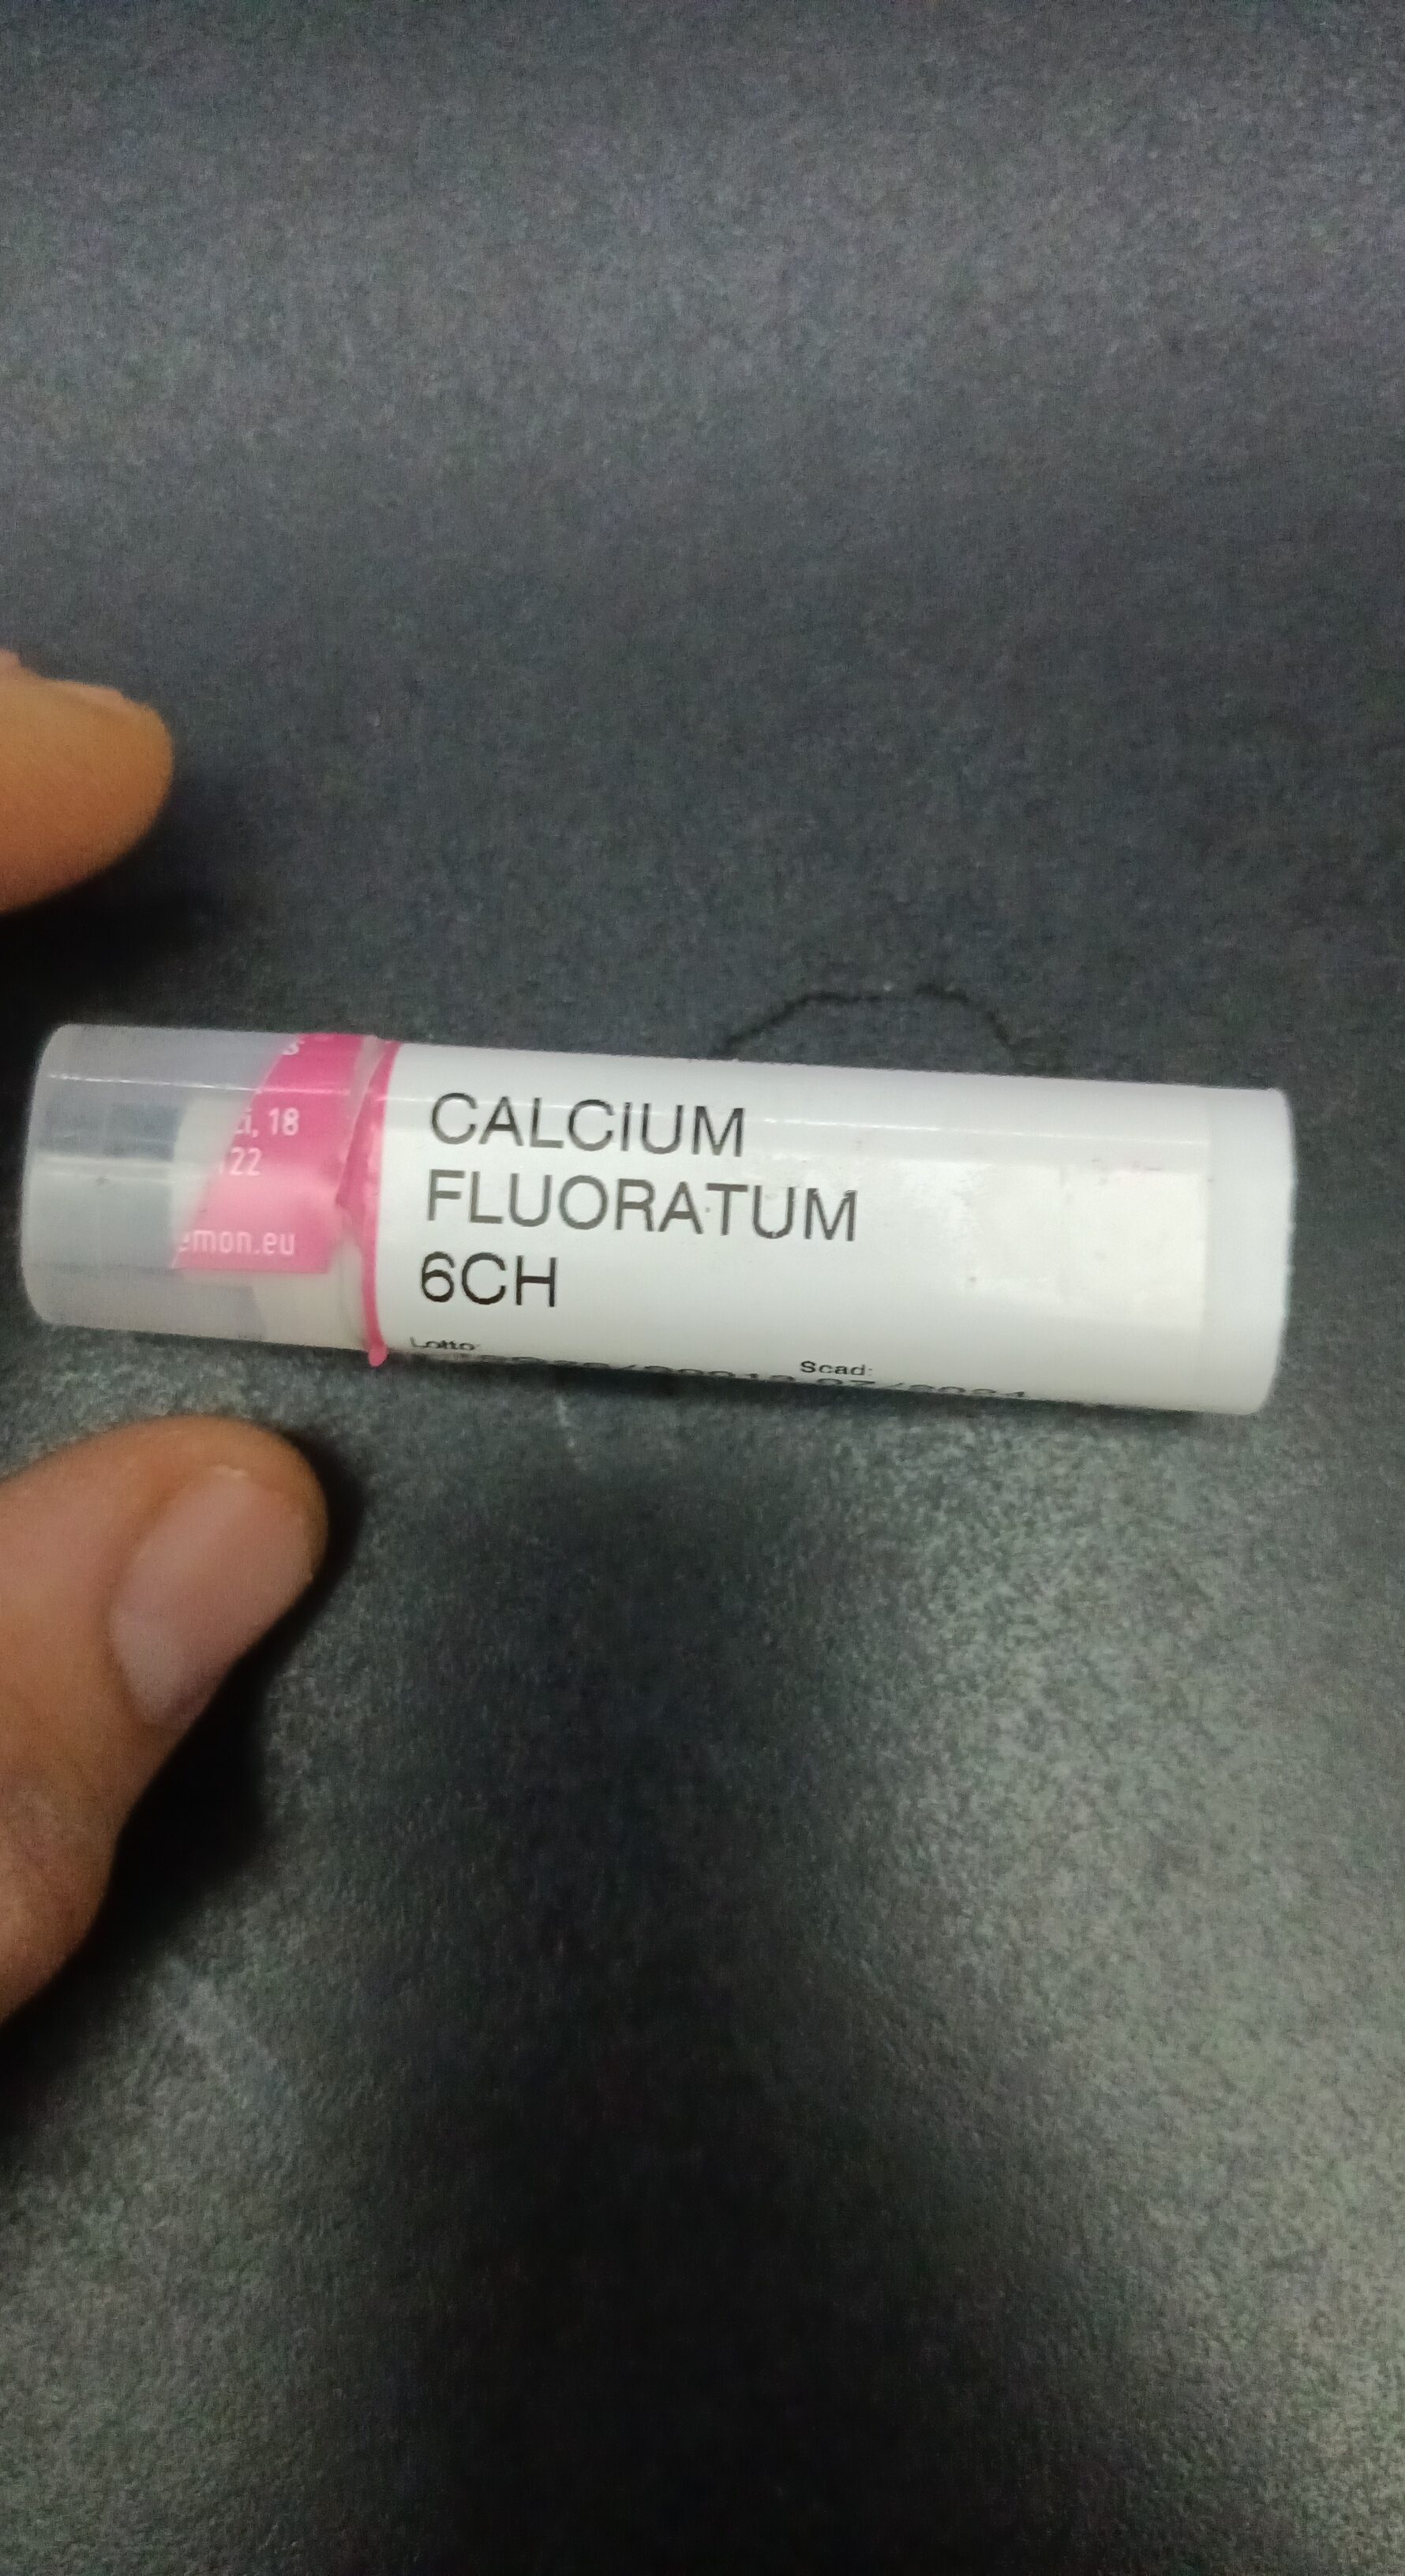 CALCIUM FLUORATUM 6CH - Product - it